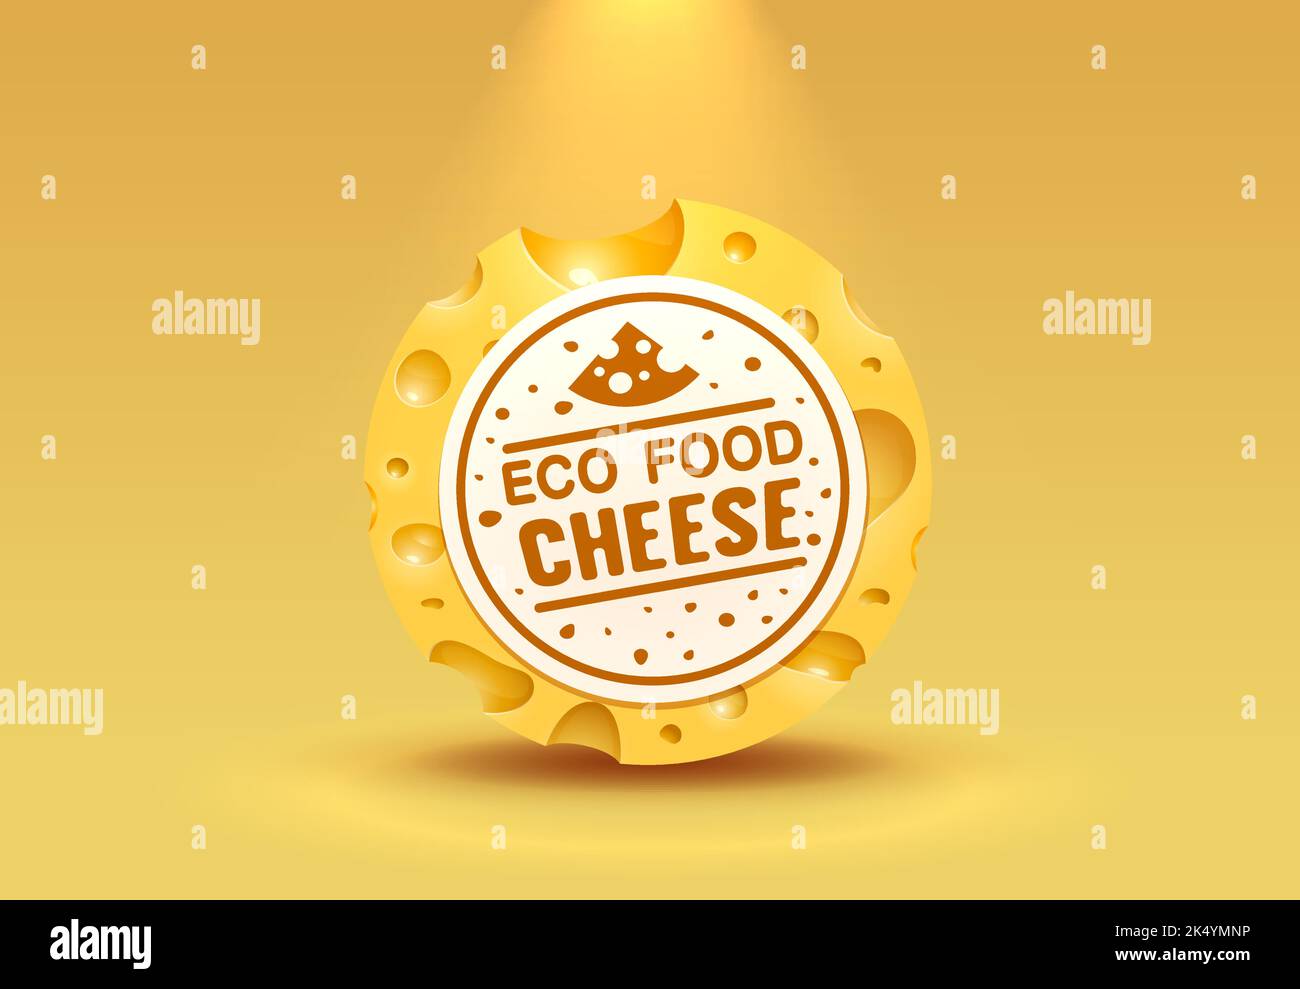 Affiche d'éco-nourriture avec étiquette de fromage, produit de menu de bannière. Illustration vectorielle Illustration de Vecteur